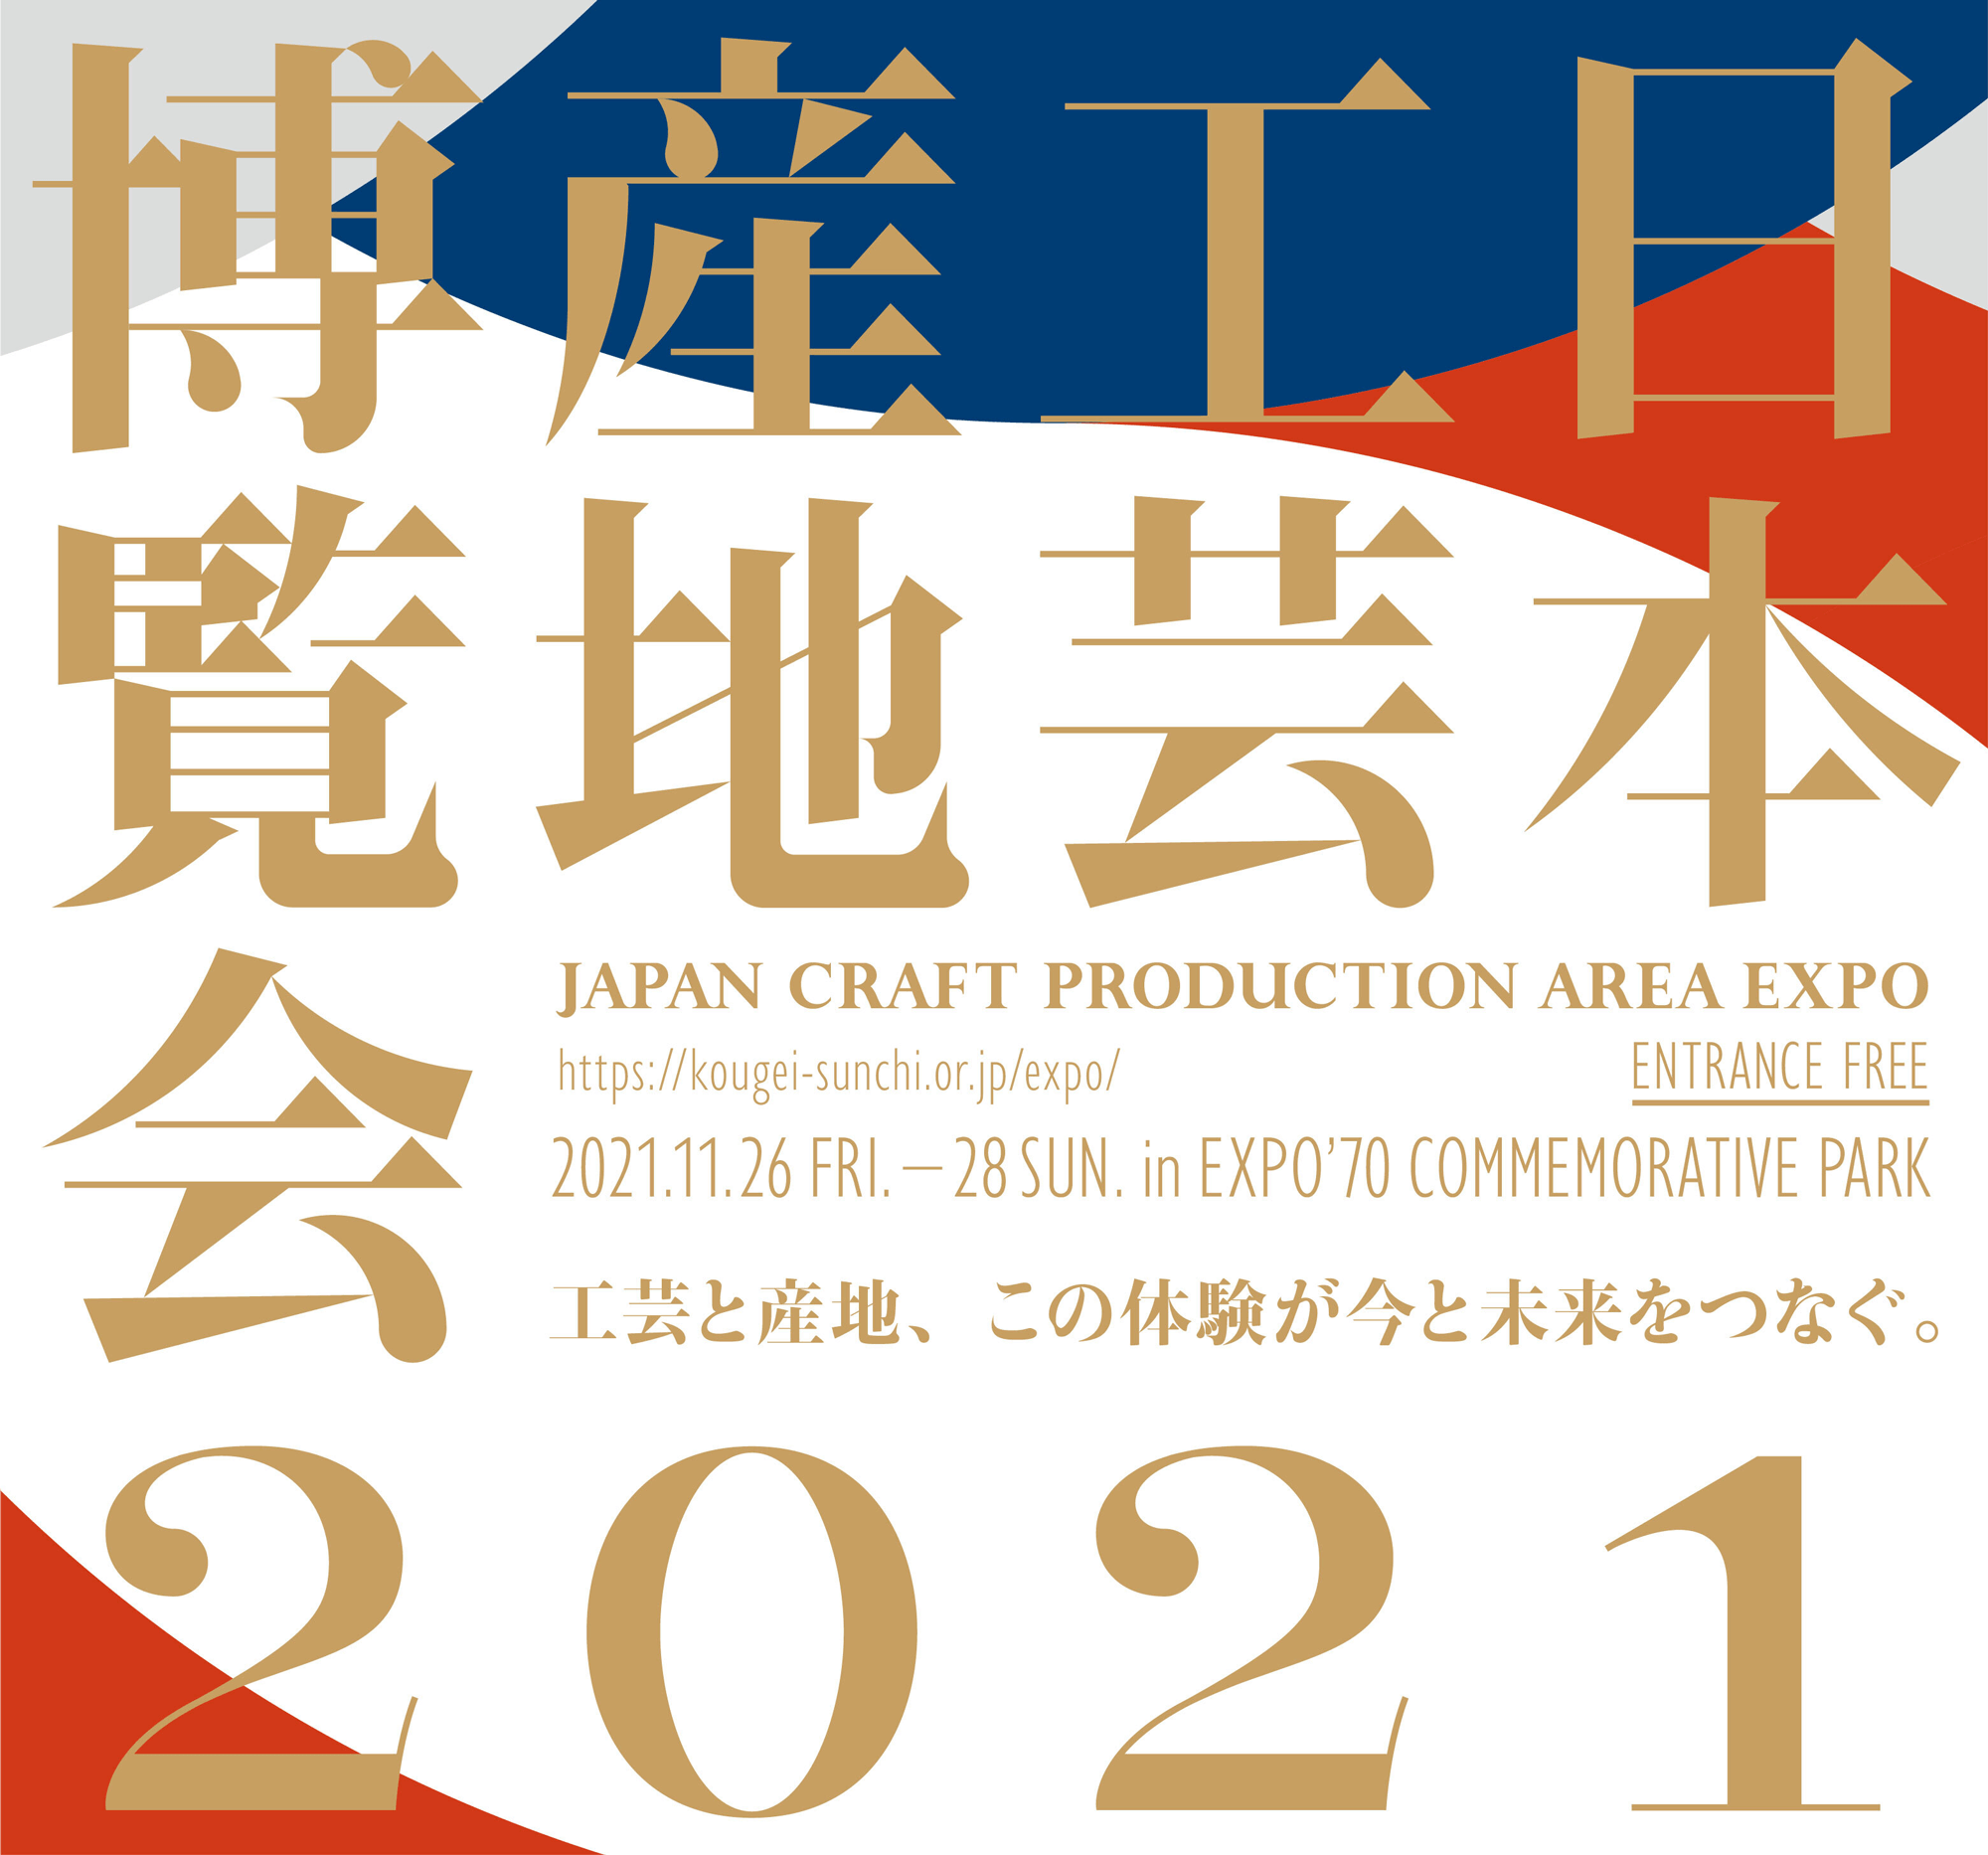 日本工芸産地博覧会 JAPAN CRAFT PRODUCTION AREA EXPO